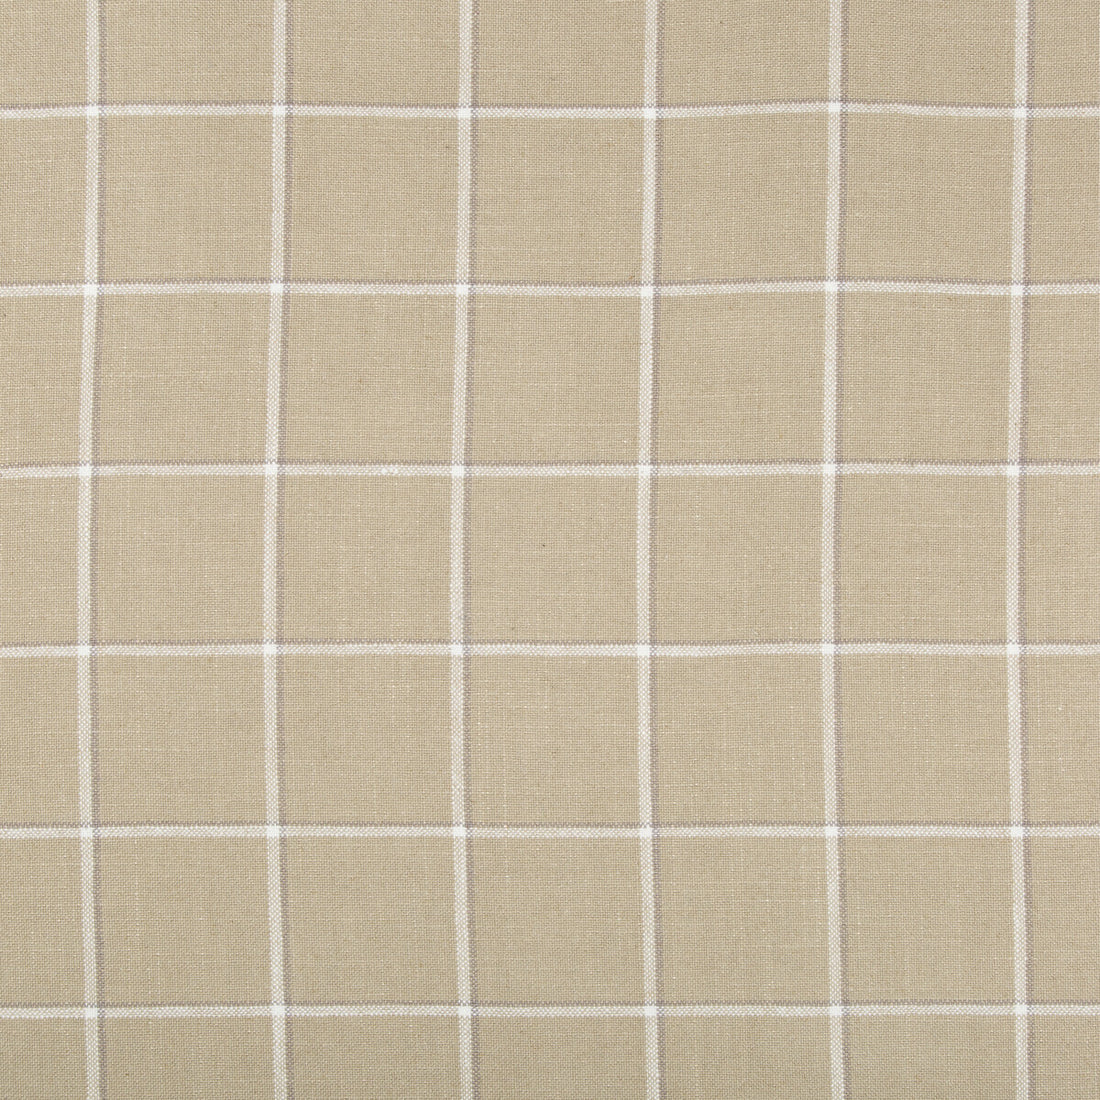 Kravet Basics fabric in 35532-16 color - pattern 35532.16.0 - by Kravet Basics